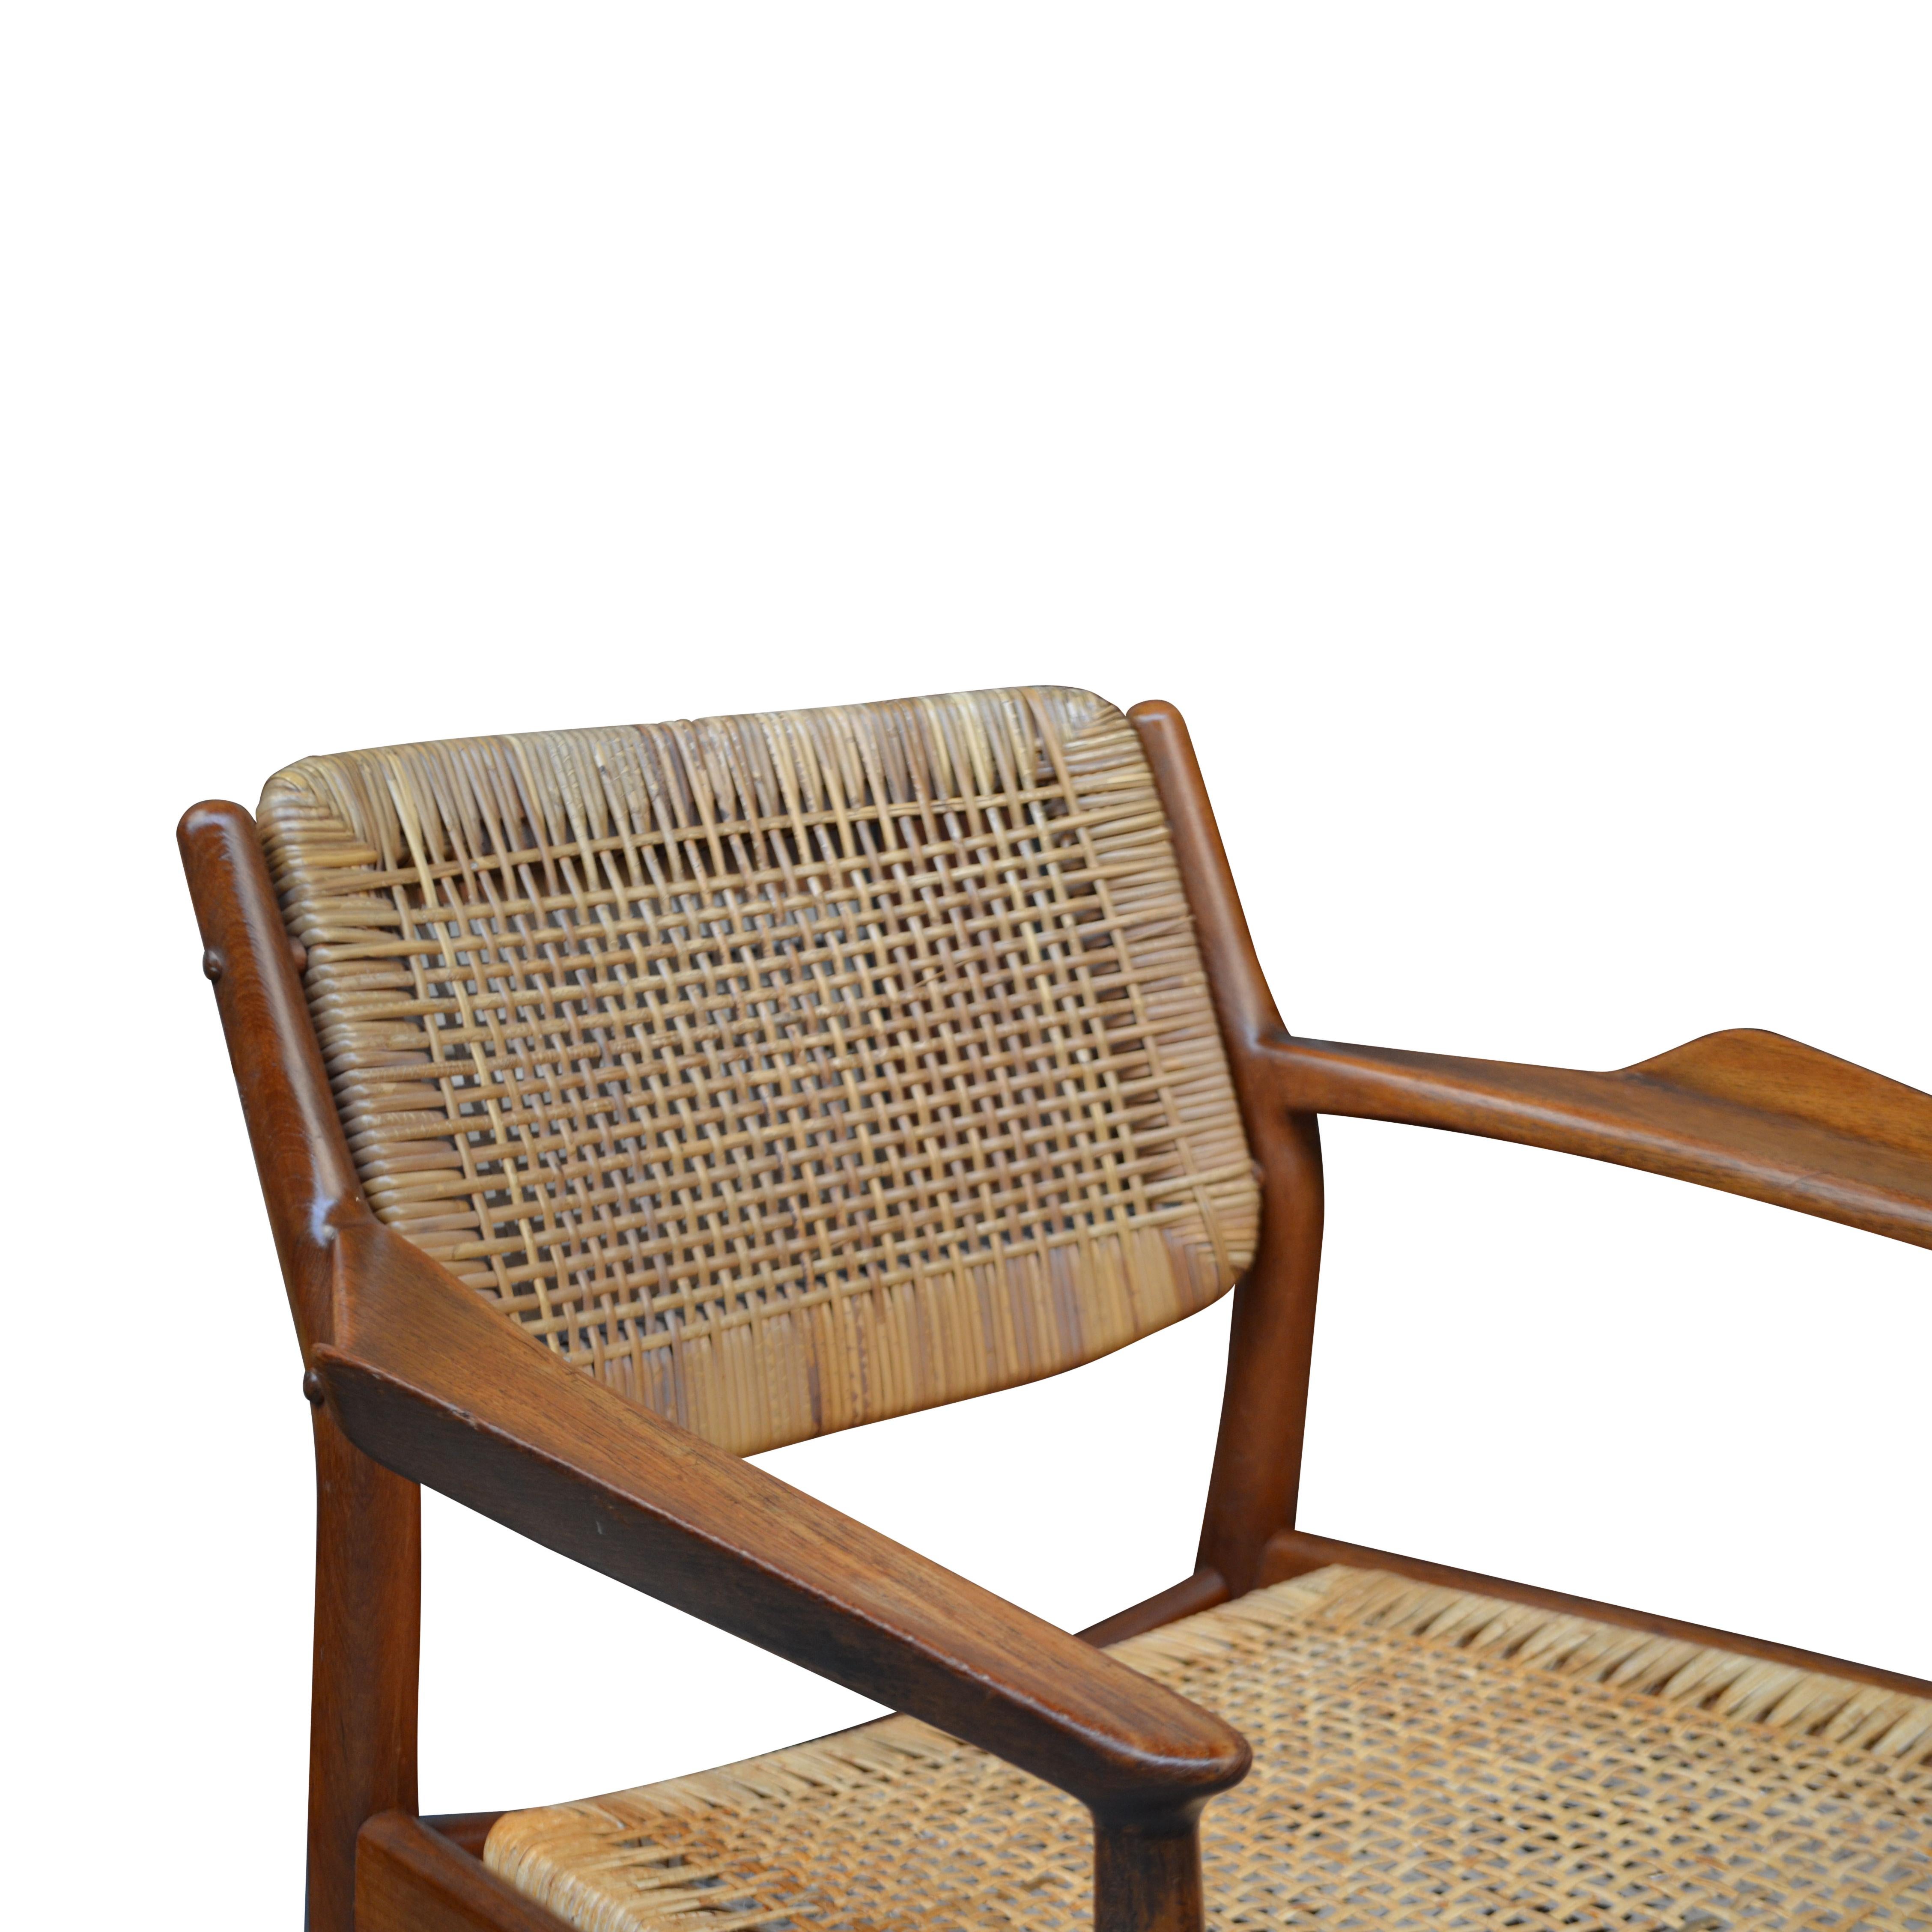 Mid-20th Century Danish Design Arne Vodder Model 51 Teak/Rattan Armrest Chair